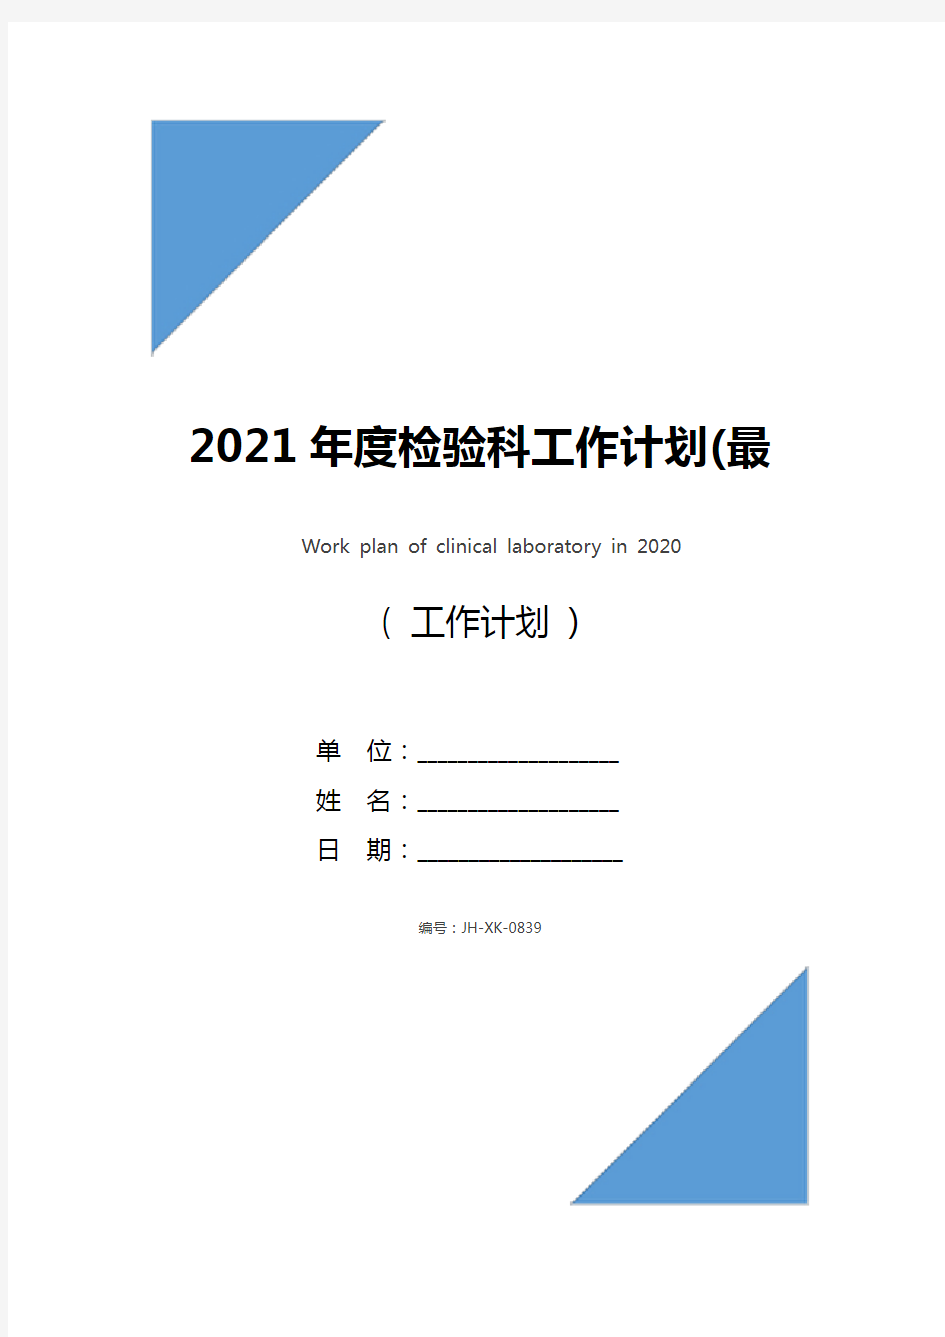 2021年度检验科工作计划(最新版)